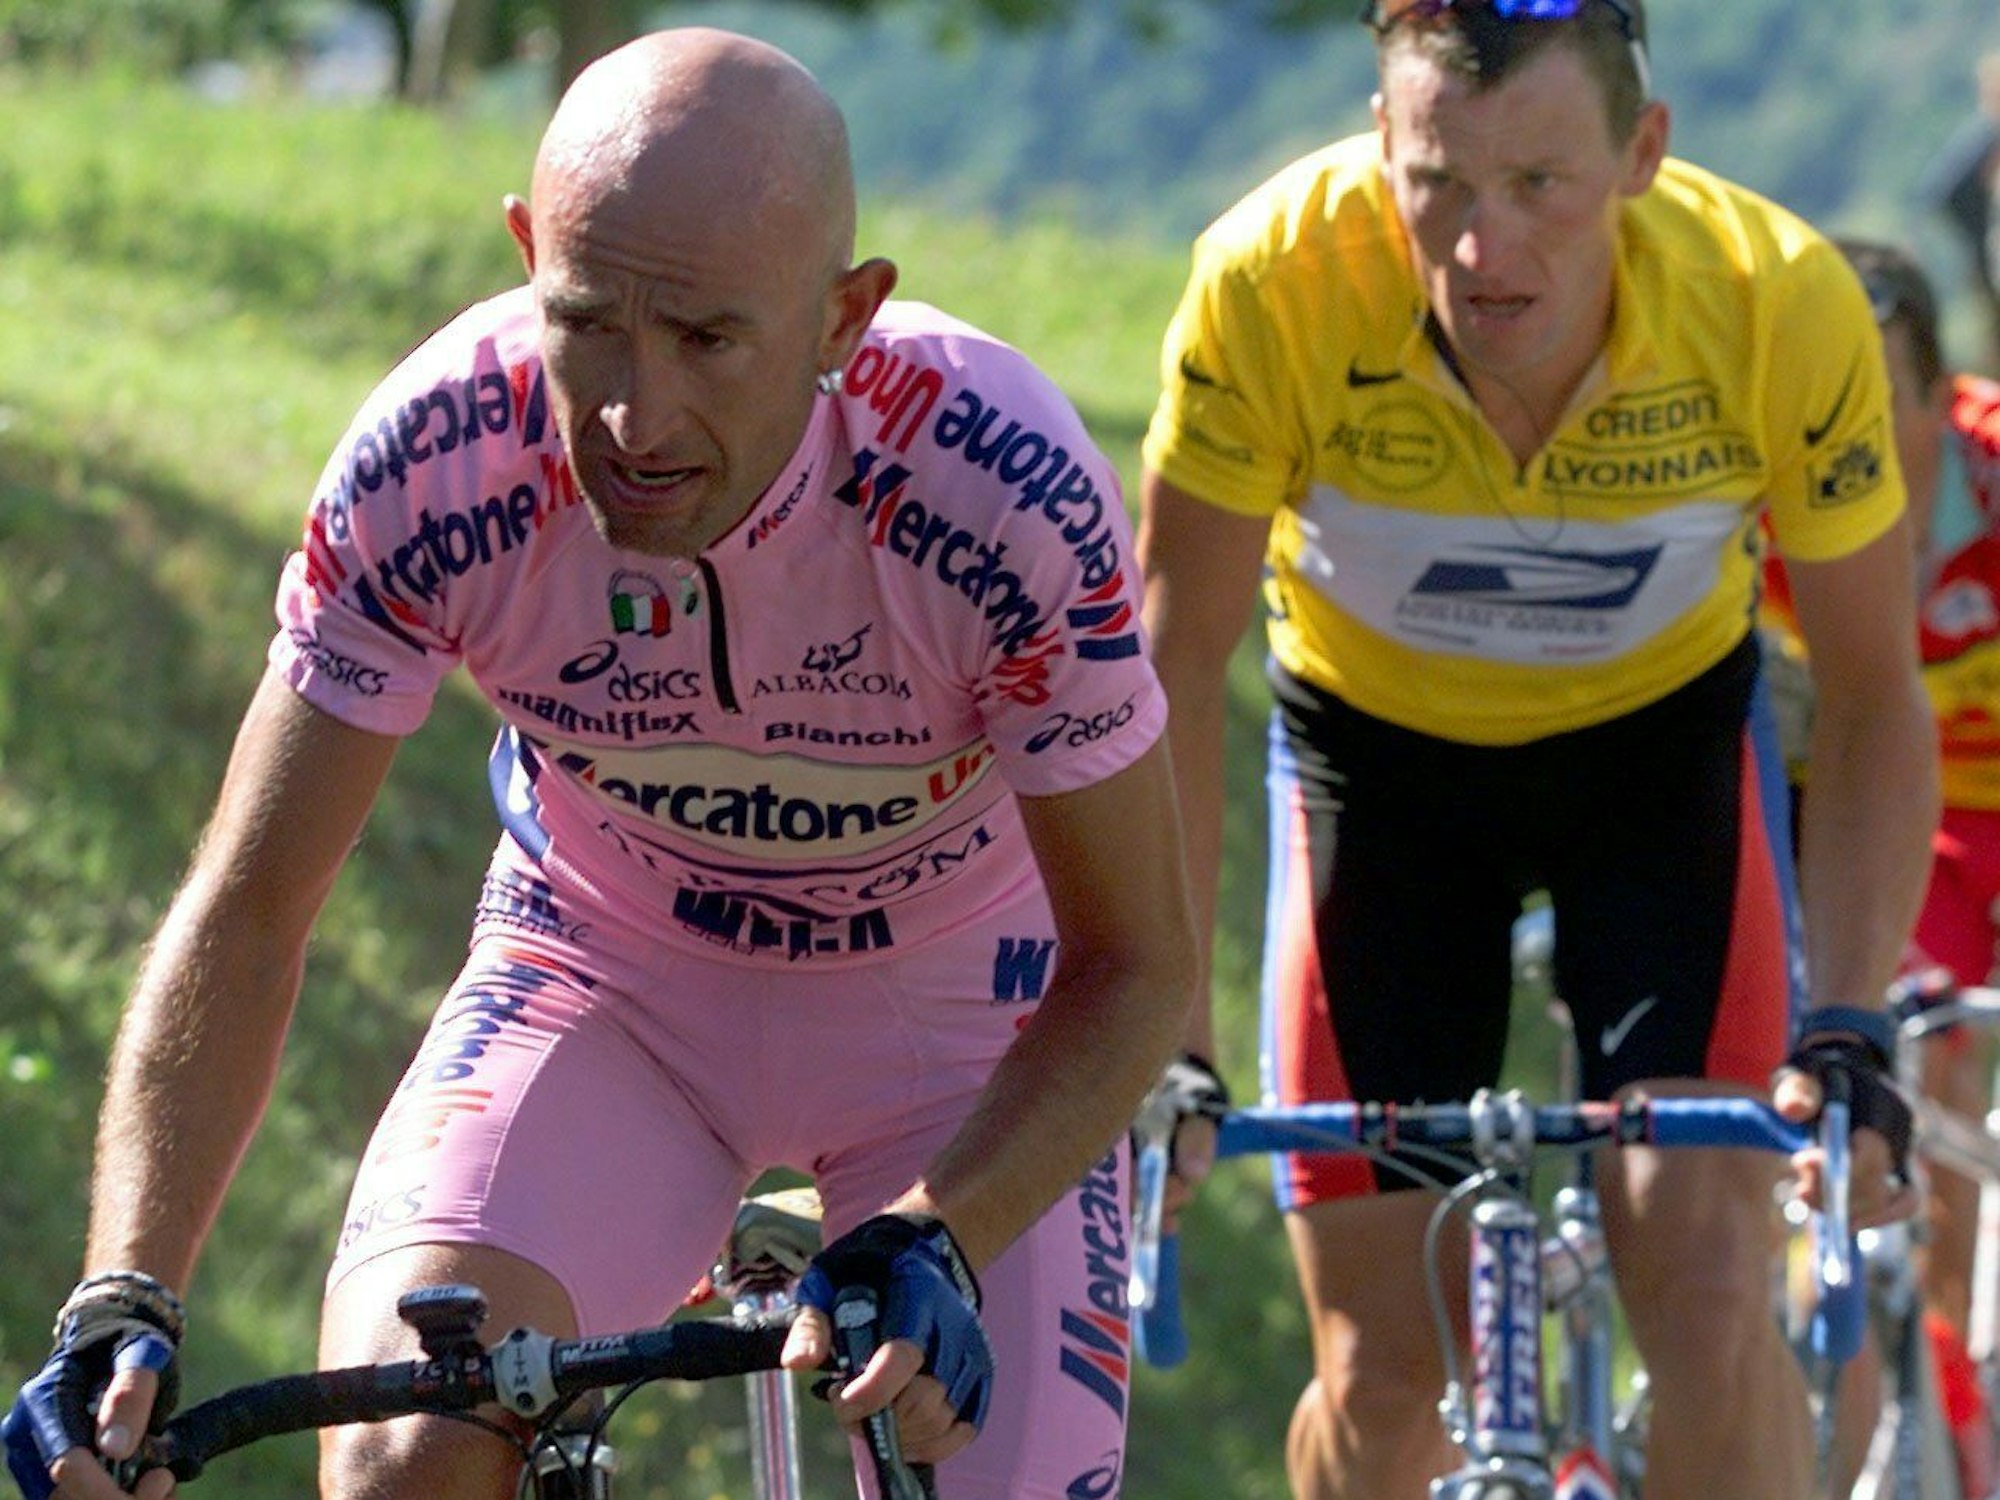 Der italienische Radprofi Marco Pantani (r) und der US-Amerikaner Lance Armstrong im Gelben Trikot des Spitzenreiters fahren einen Berg hoch.